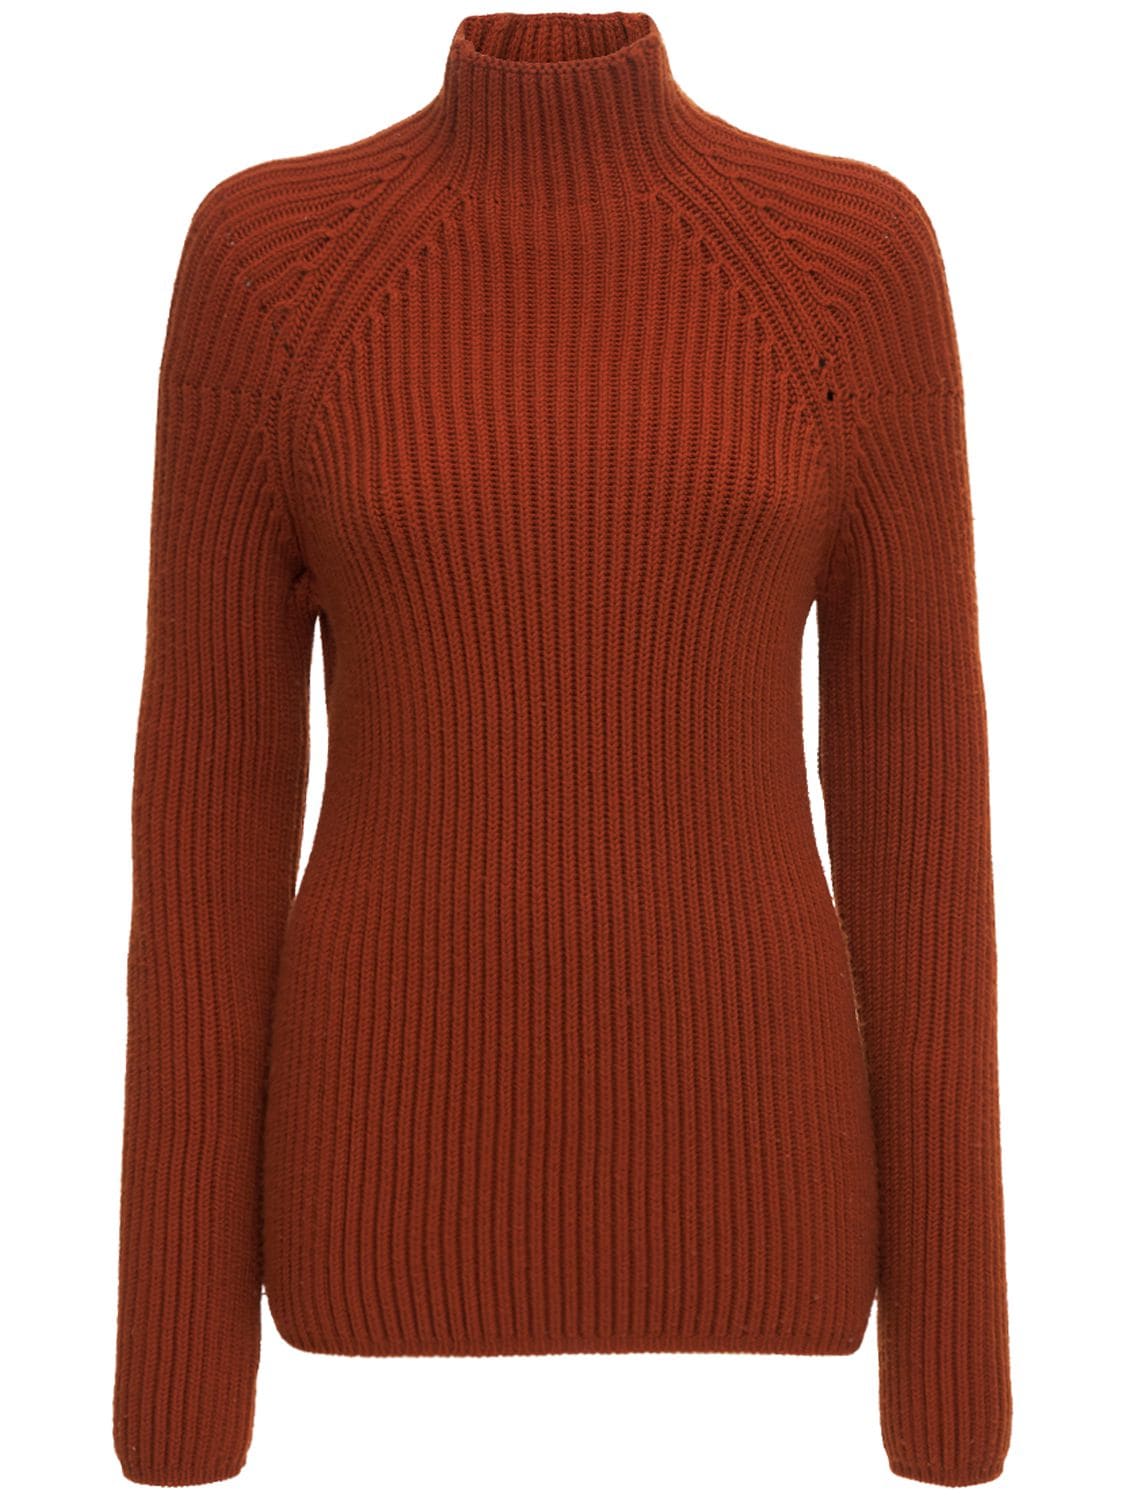 Gabriela Hearst - Yale merino wool knit rib sweater - Bordeaux ...